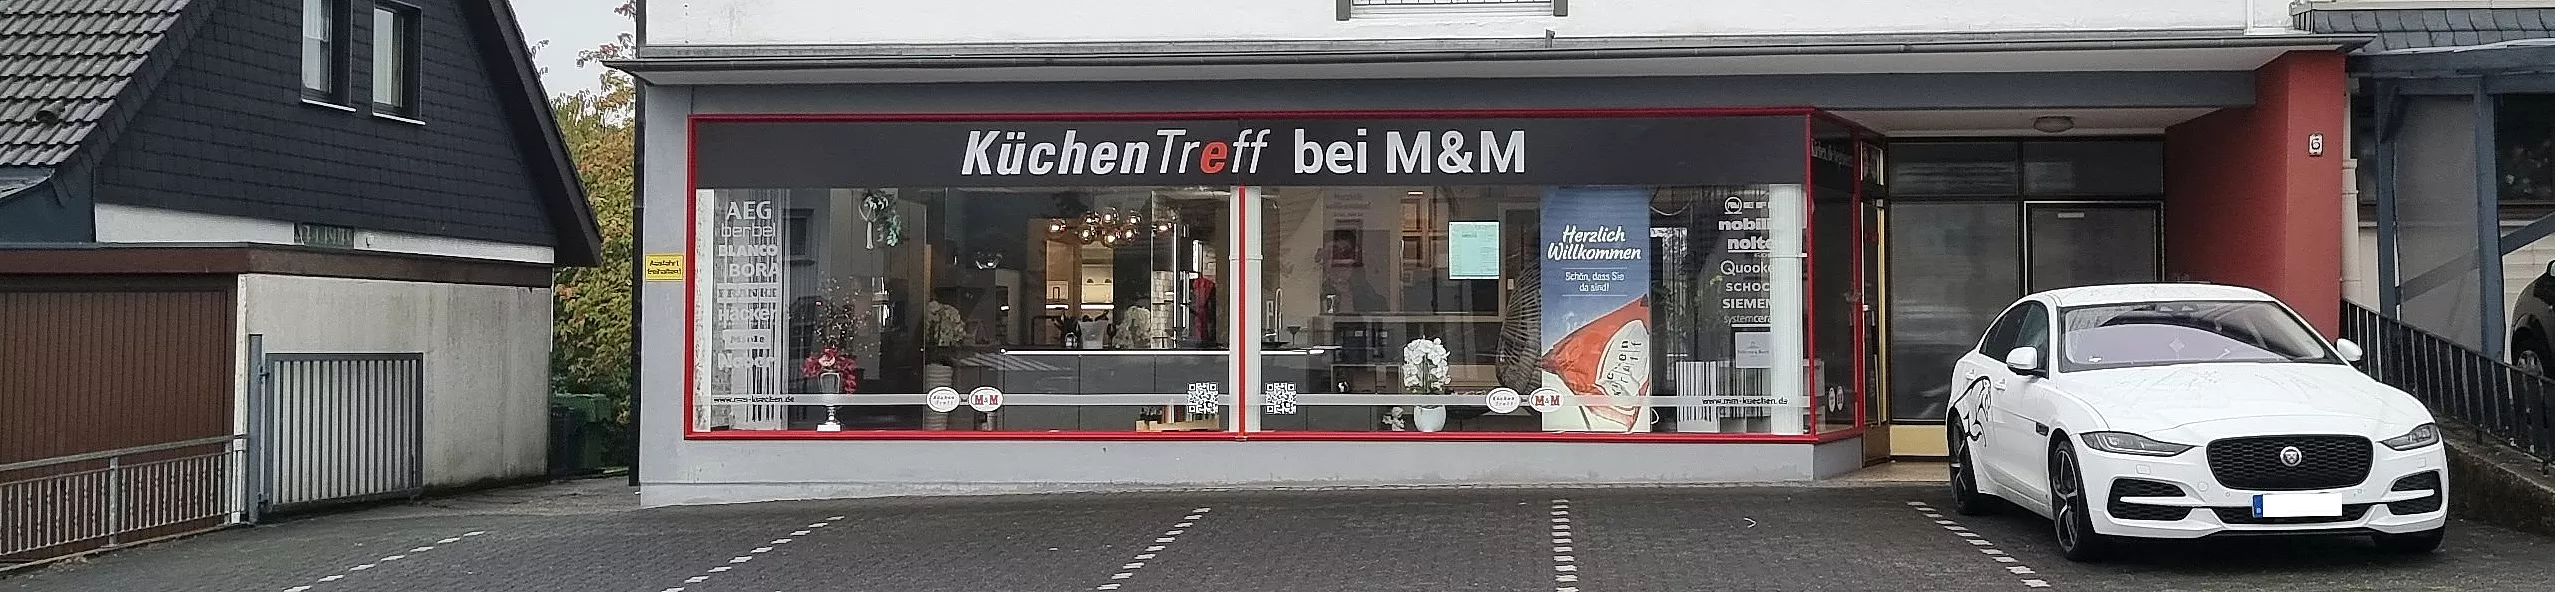 kuechentreff-bei-mundm-1-top-banner